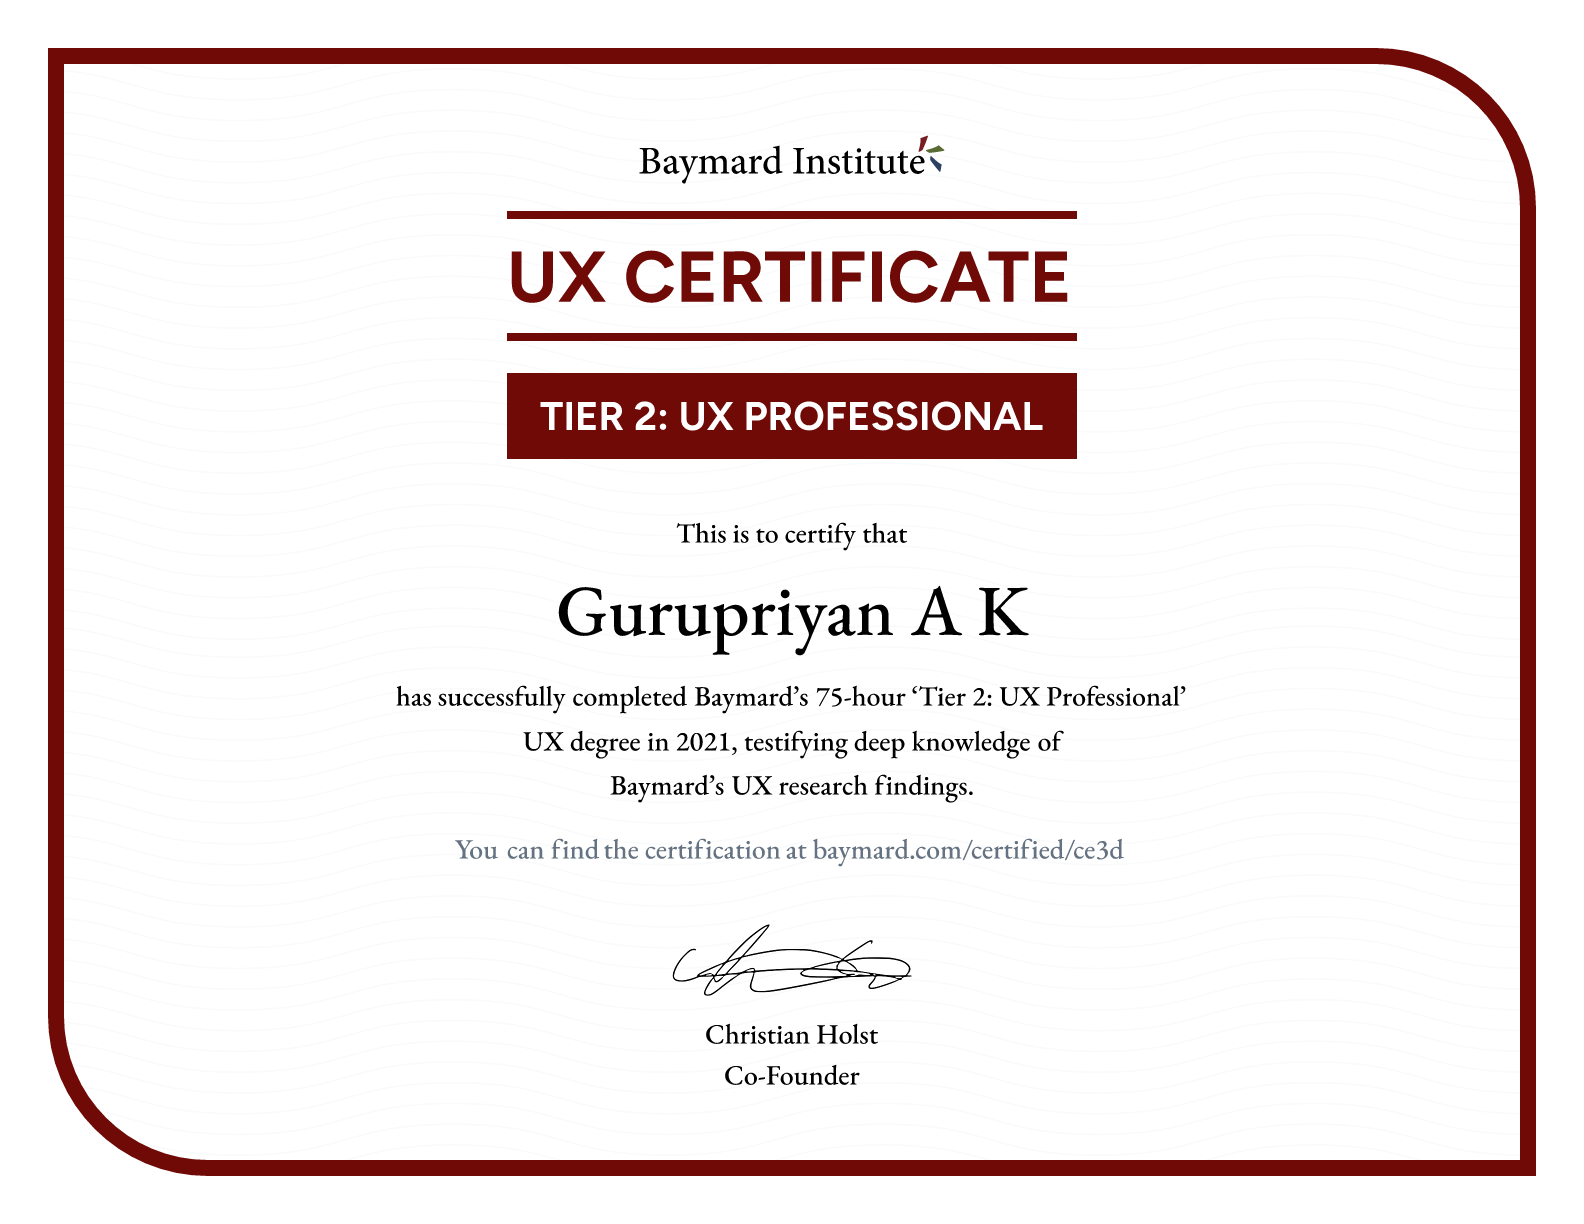 Gurupriyan A K’s certificate